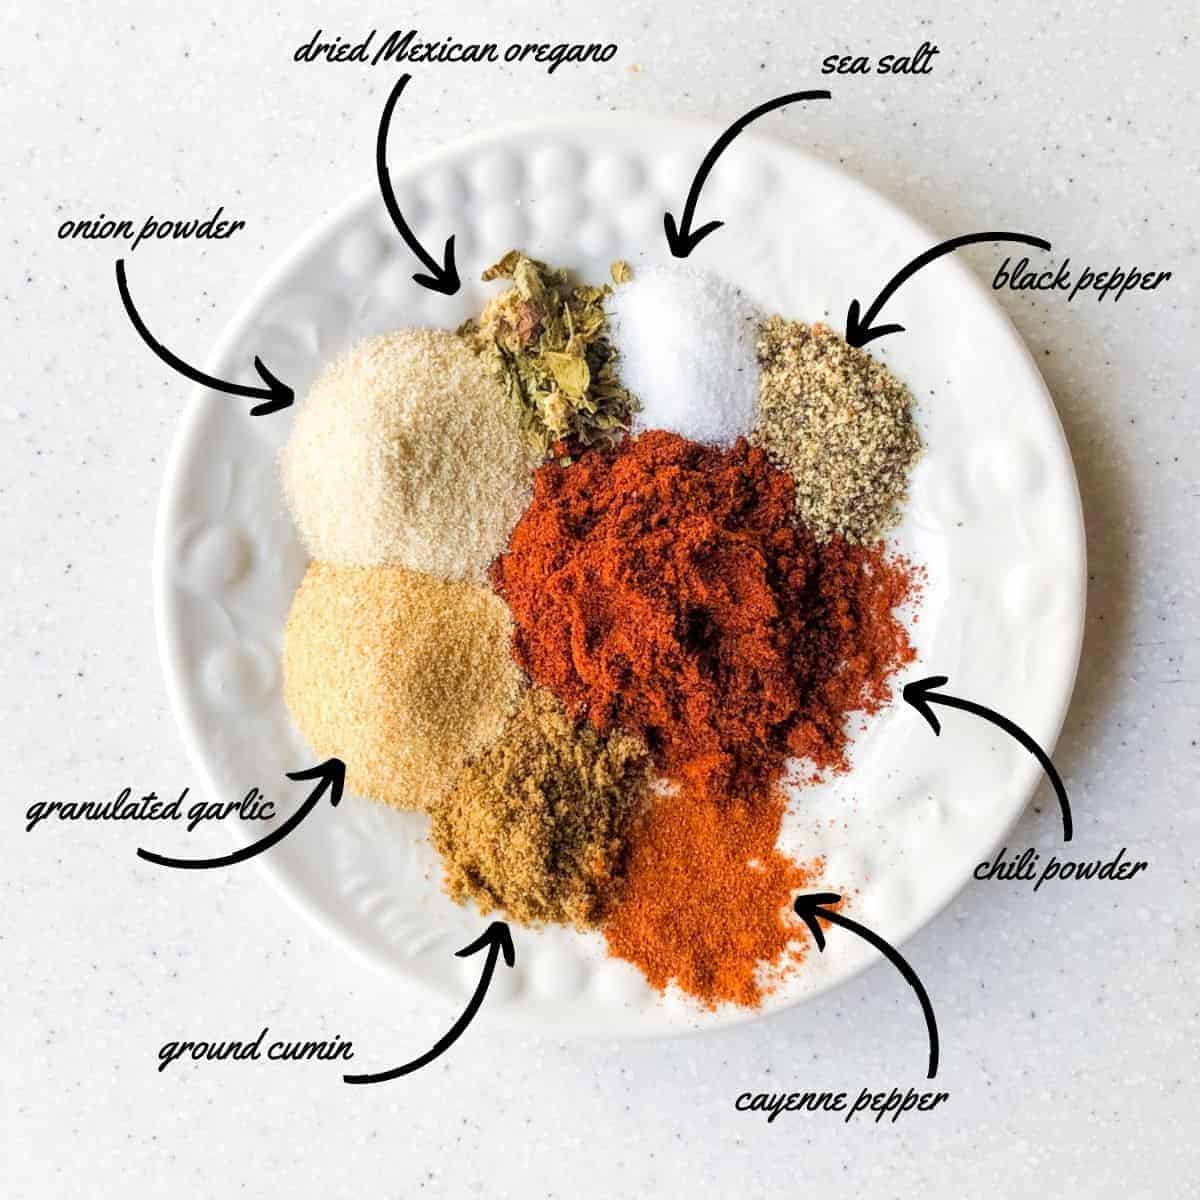 spices ingredients for chili: dried mexican oregano, sea salt, black pepper, chili powder, cayenne powder, ground cumin, granulated garlic, onion powder